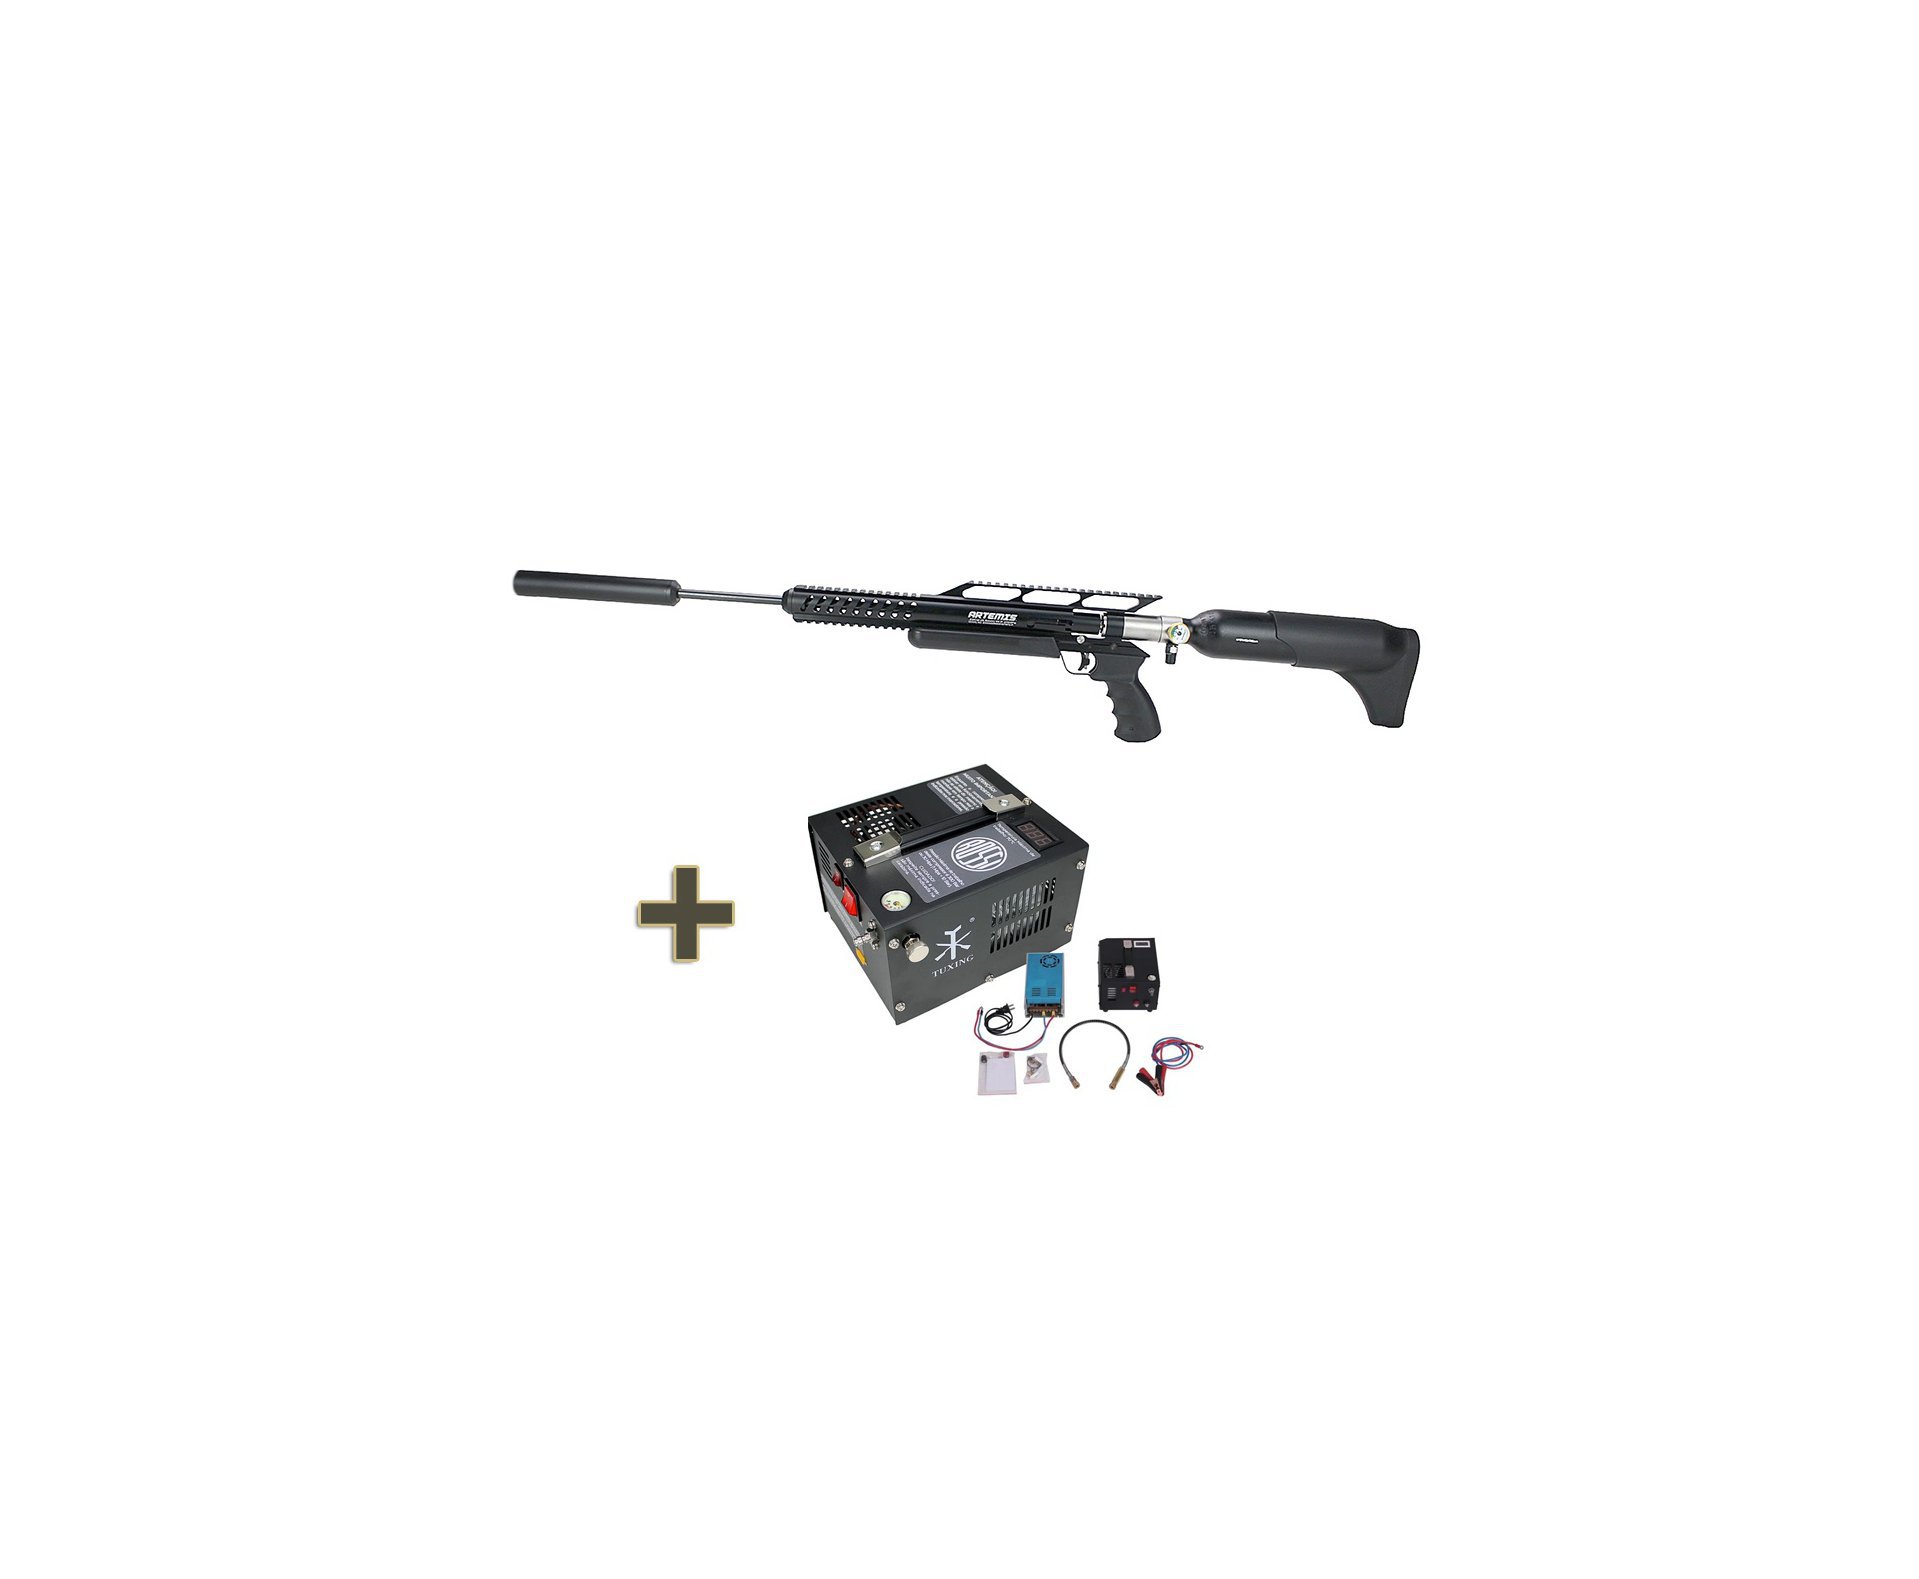 Carabina de Pressão PCP Artemis M18 Hammer 5.5mm - FXR Armas + Compressor portátil 300BAR 110V/220V/12V